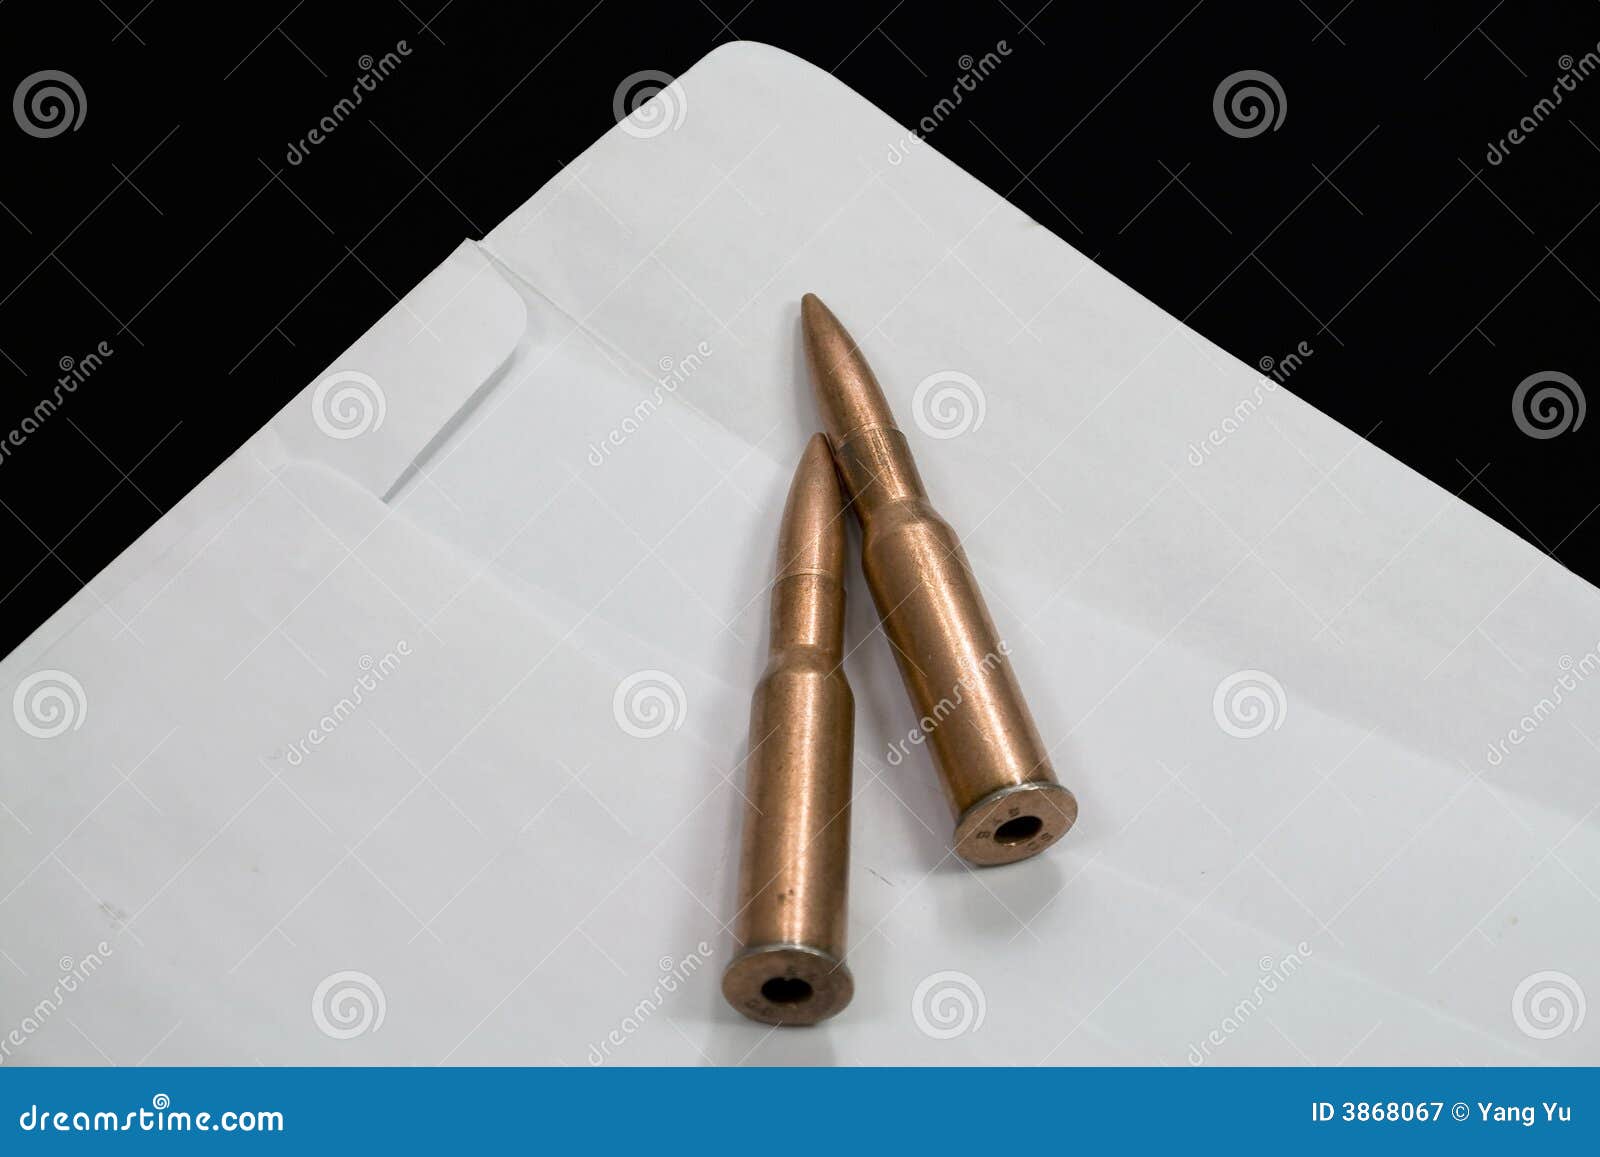 bullets-open-envelope-3868067.jpg